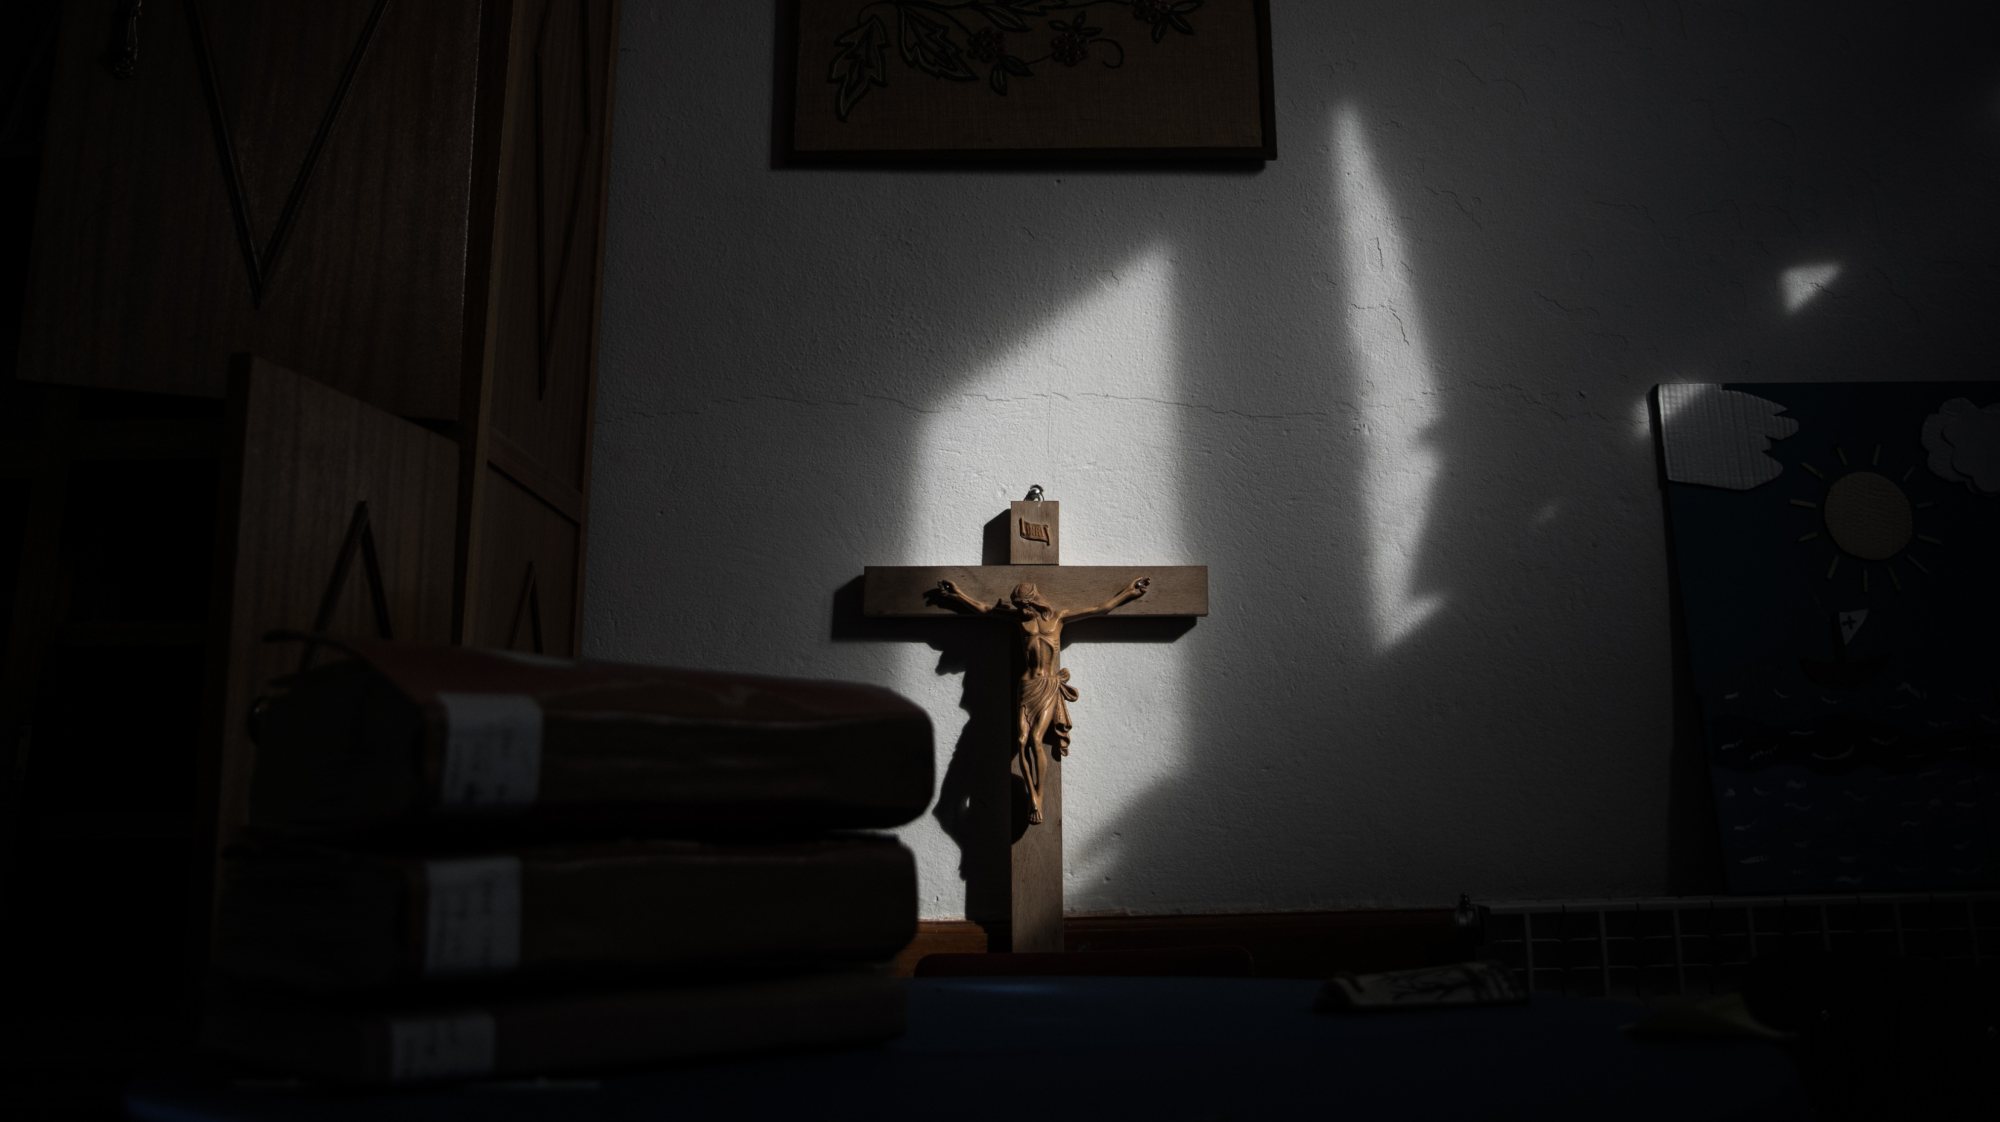 Reportagem abusos sexuais na igreja católica, Externato de Nossa Senhora dos Remédios JOÃO PORFÍRIO/OBSERVADOR